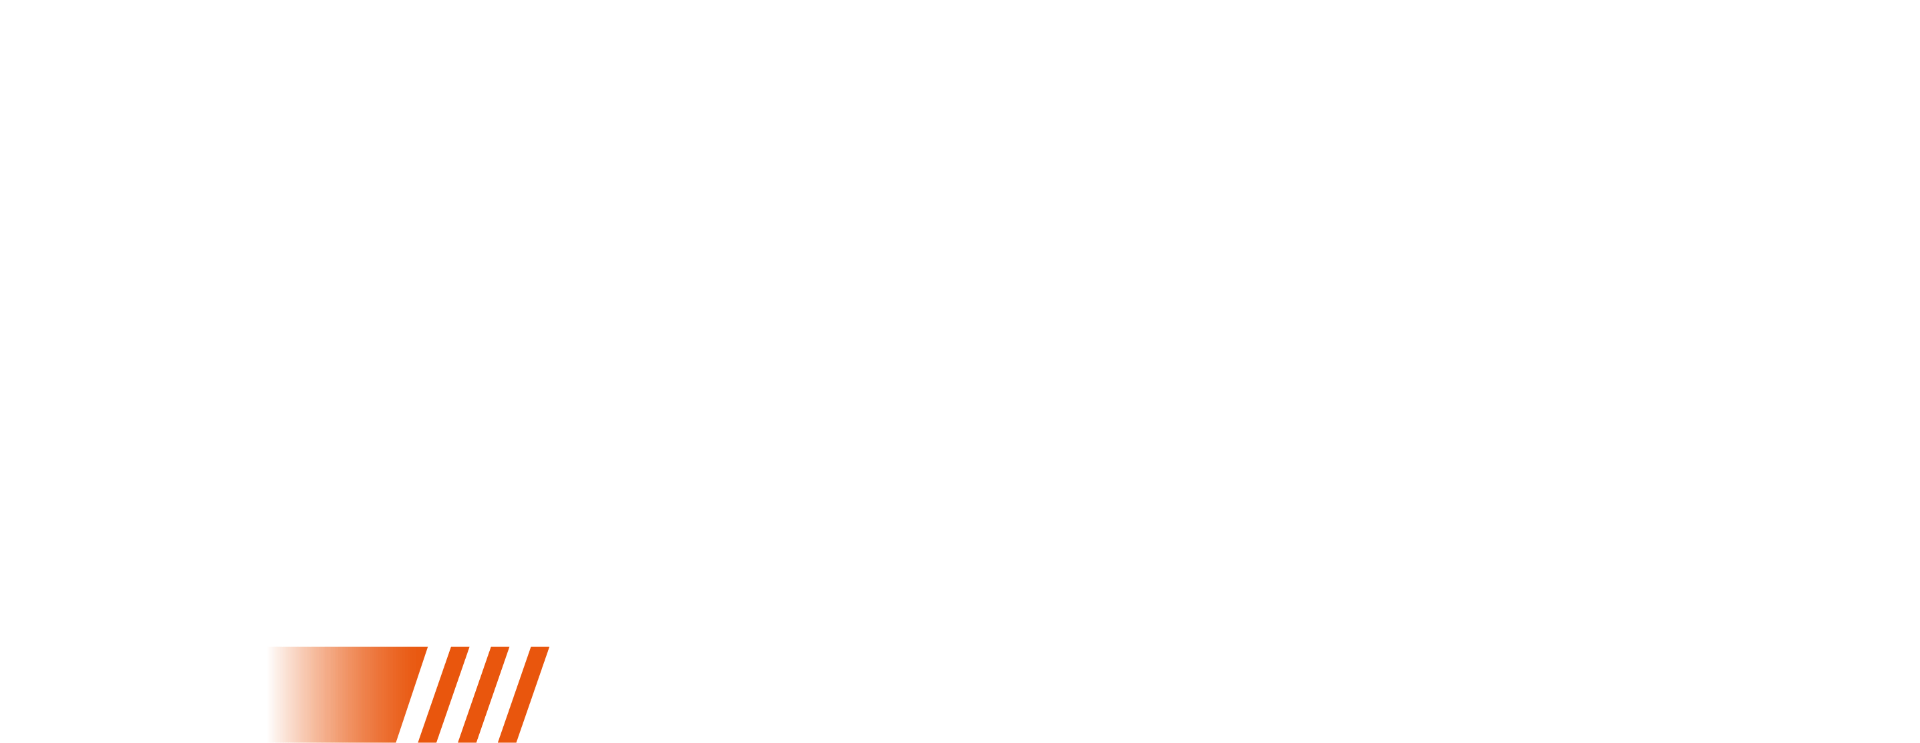 WRC Generations - PS4 - Compra jogos online na